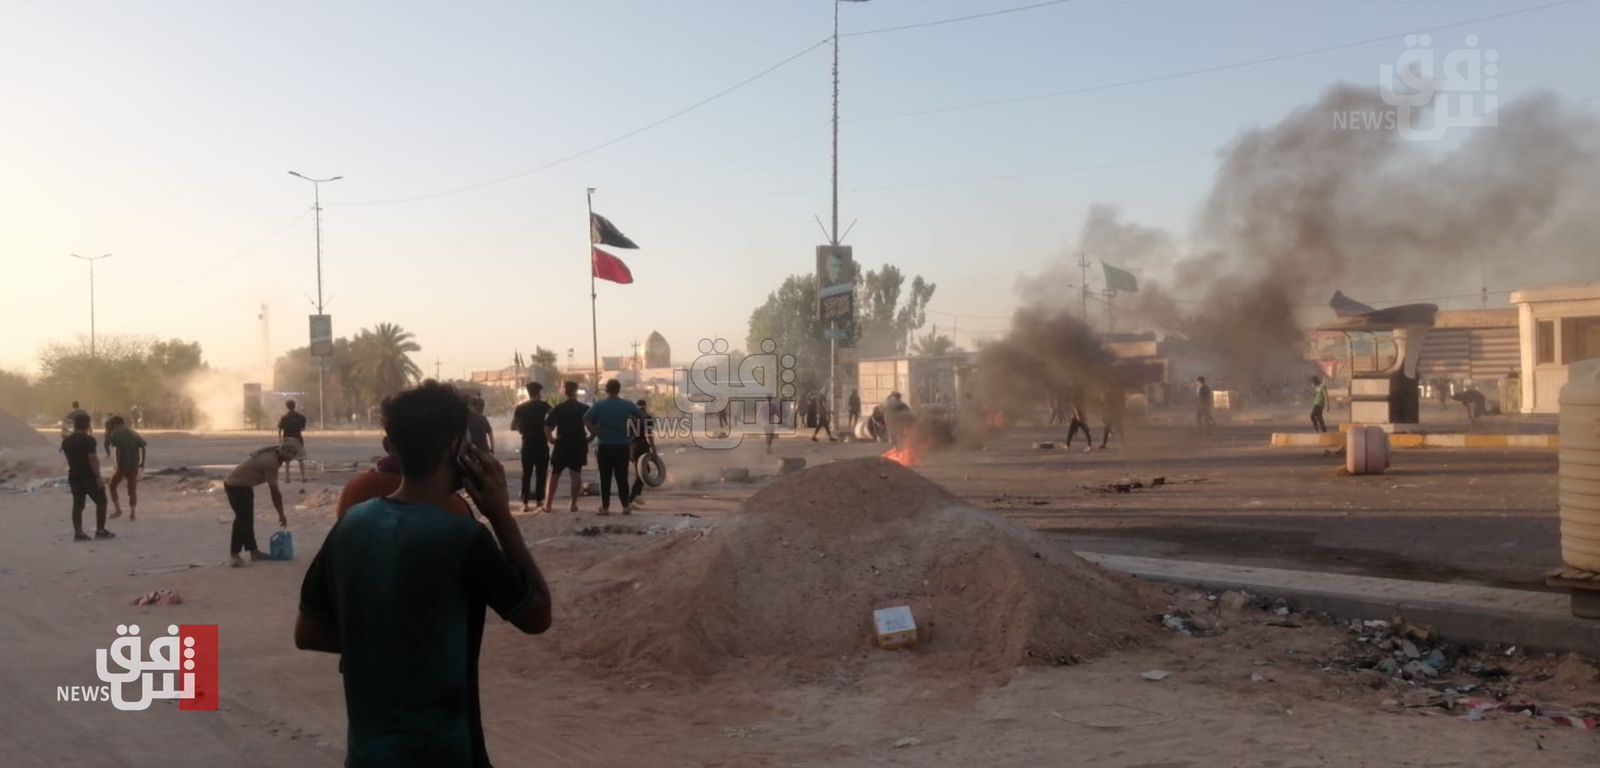 النجف.. كرّ وفرّ بين متظاهرين وقوات الأمن بسبب "الكهرباء" (صور)